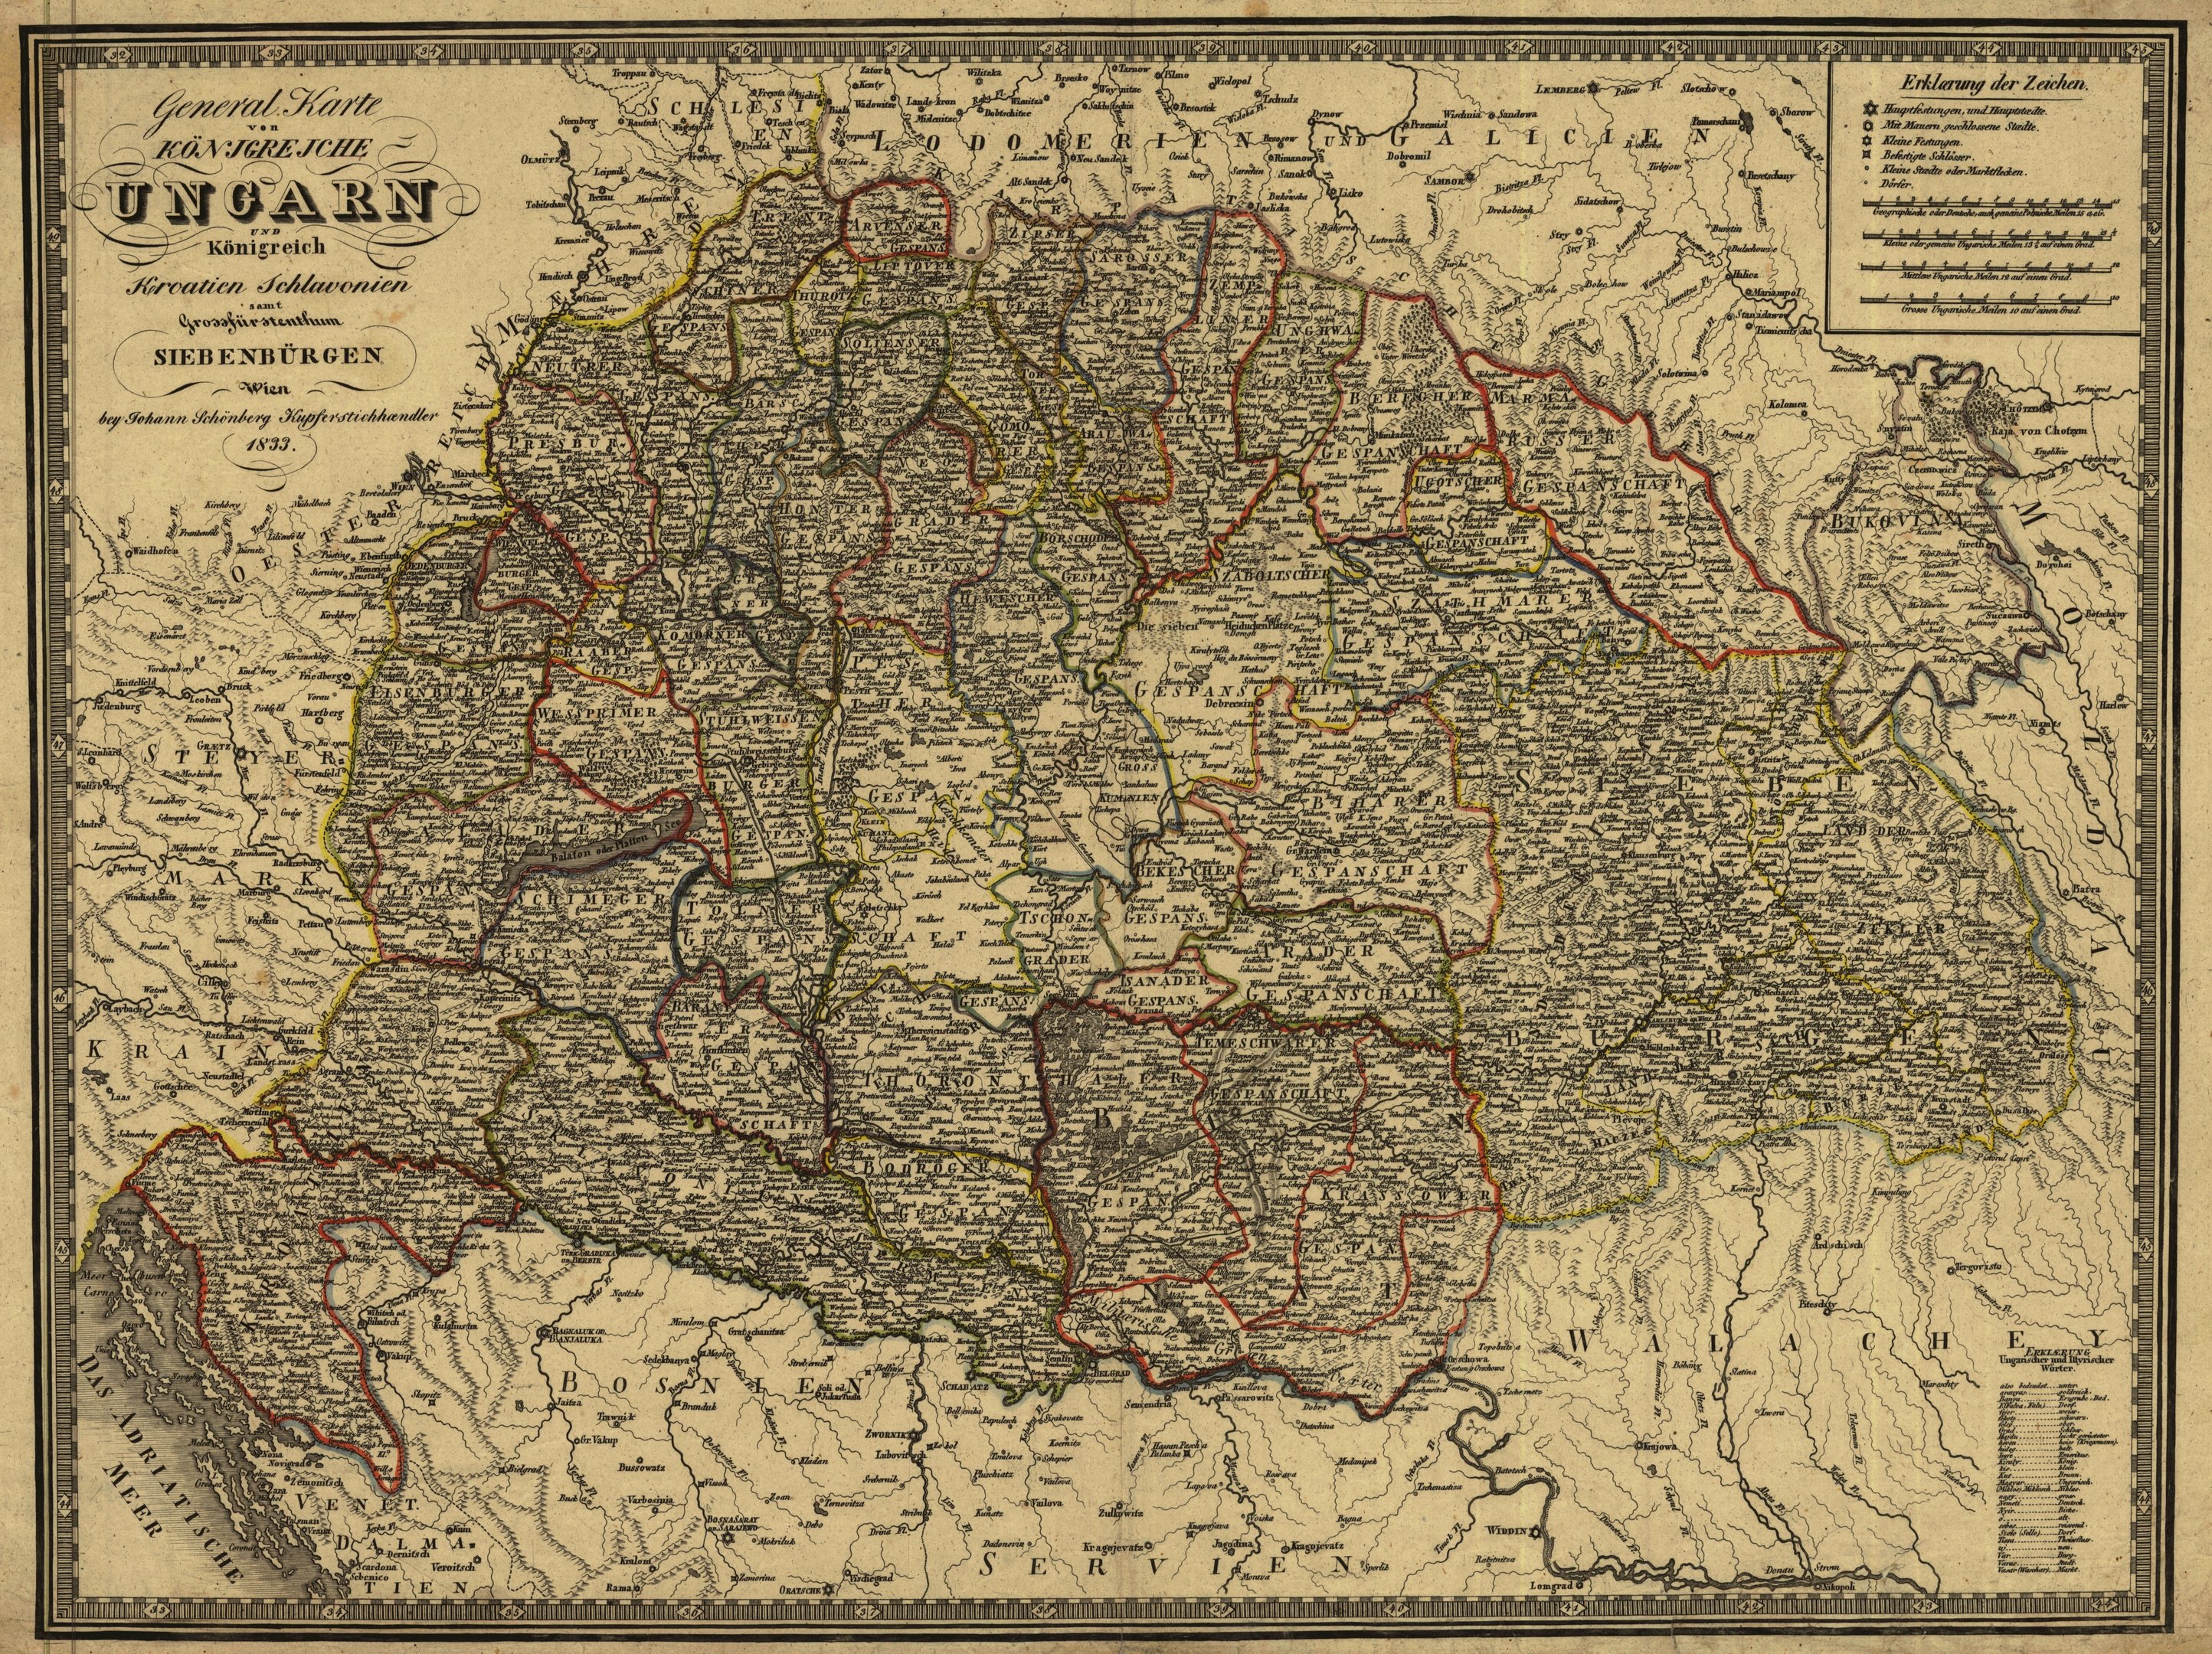 A Magyar Királyság és részeinek általános térképe (Magyar Környezetvédelmi és Vízügyi Múzeum - Duna Múzeum CC BY-NC-SA)